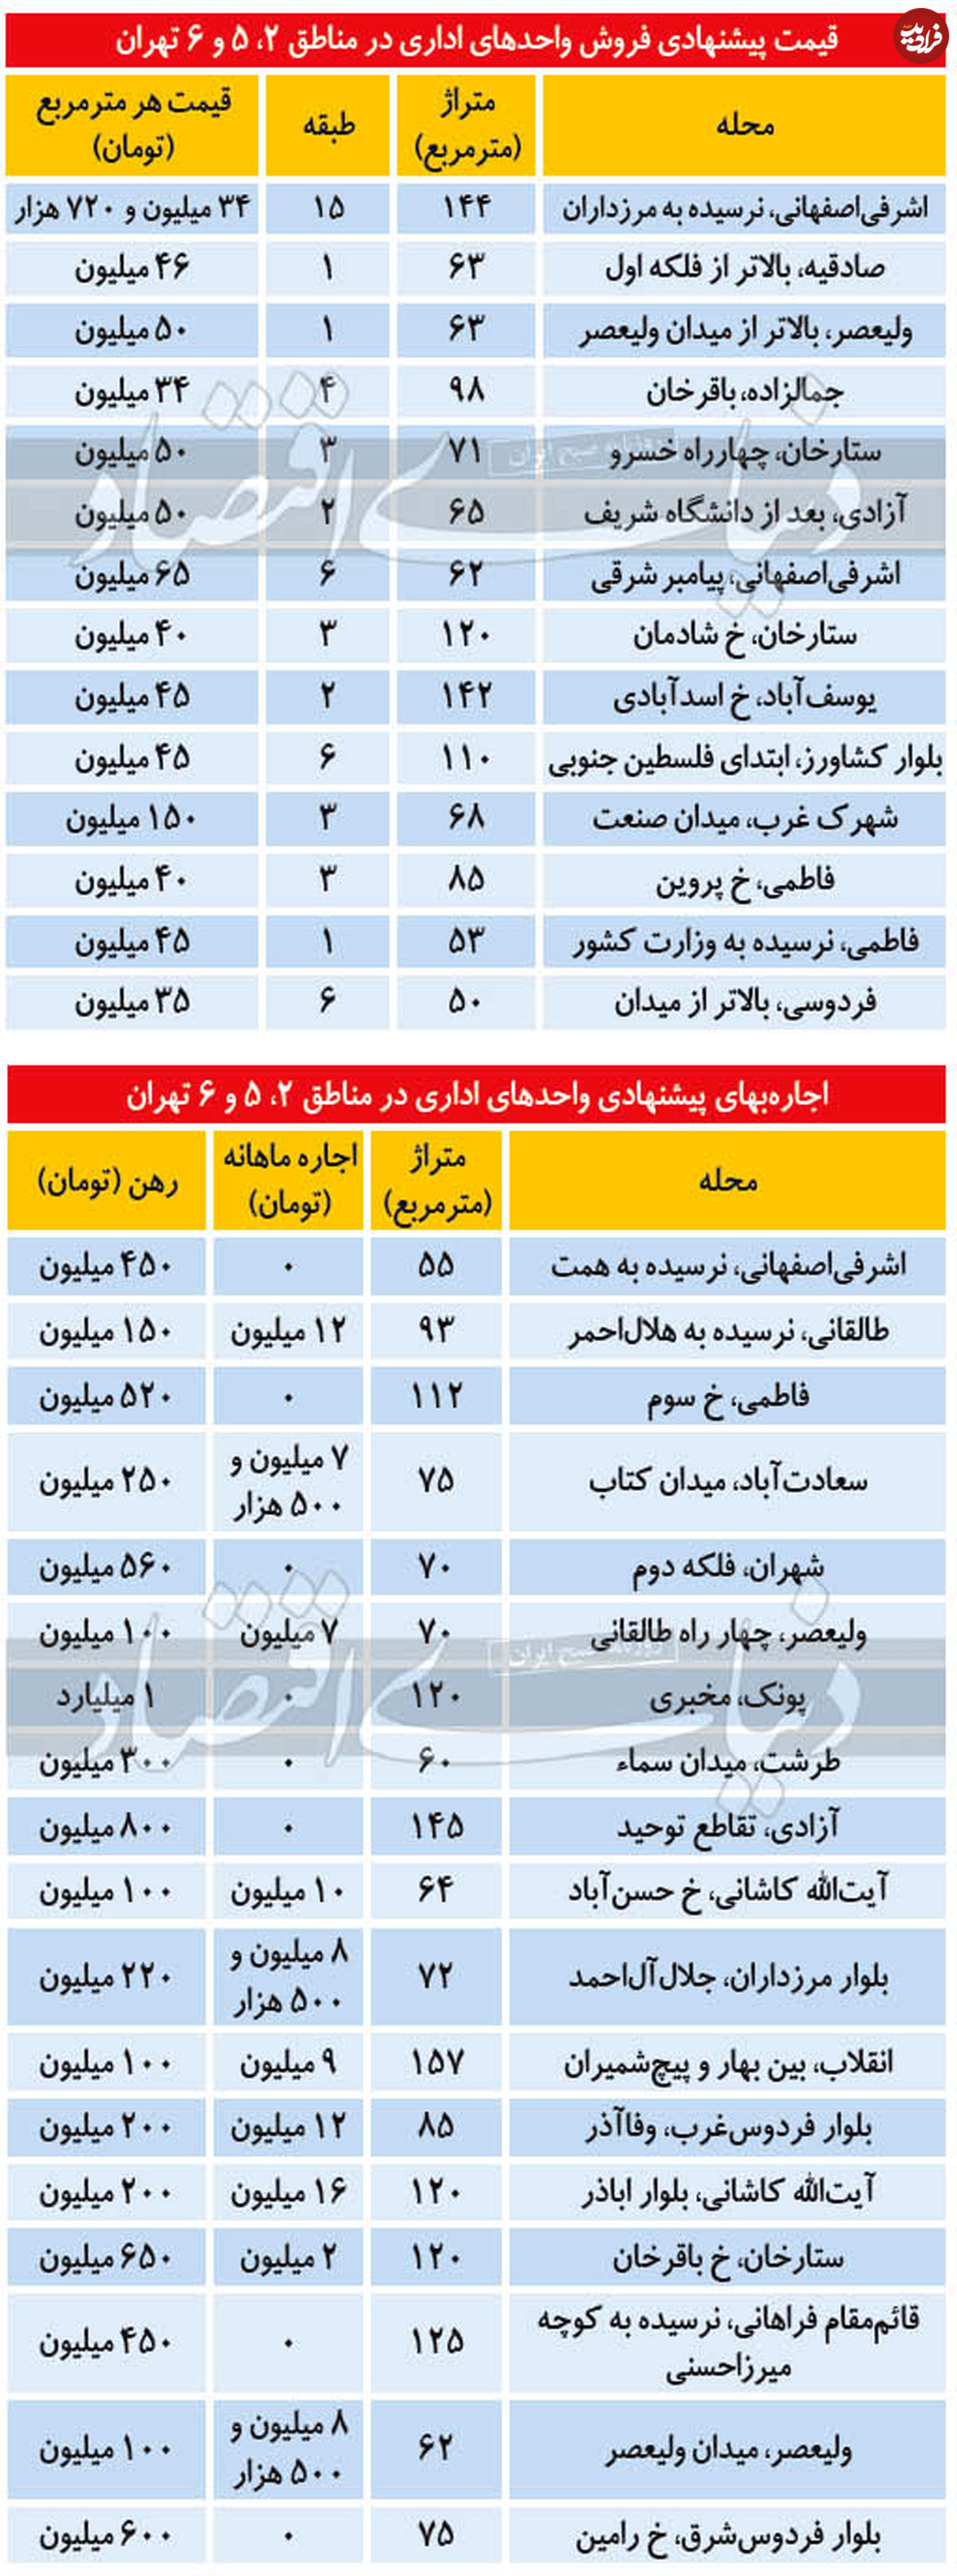 قیمت واحدهای اداری در تهران